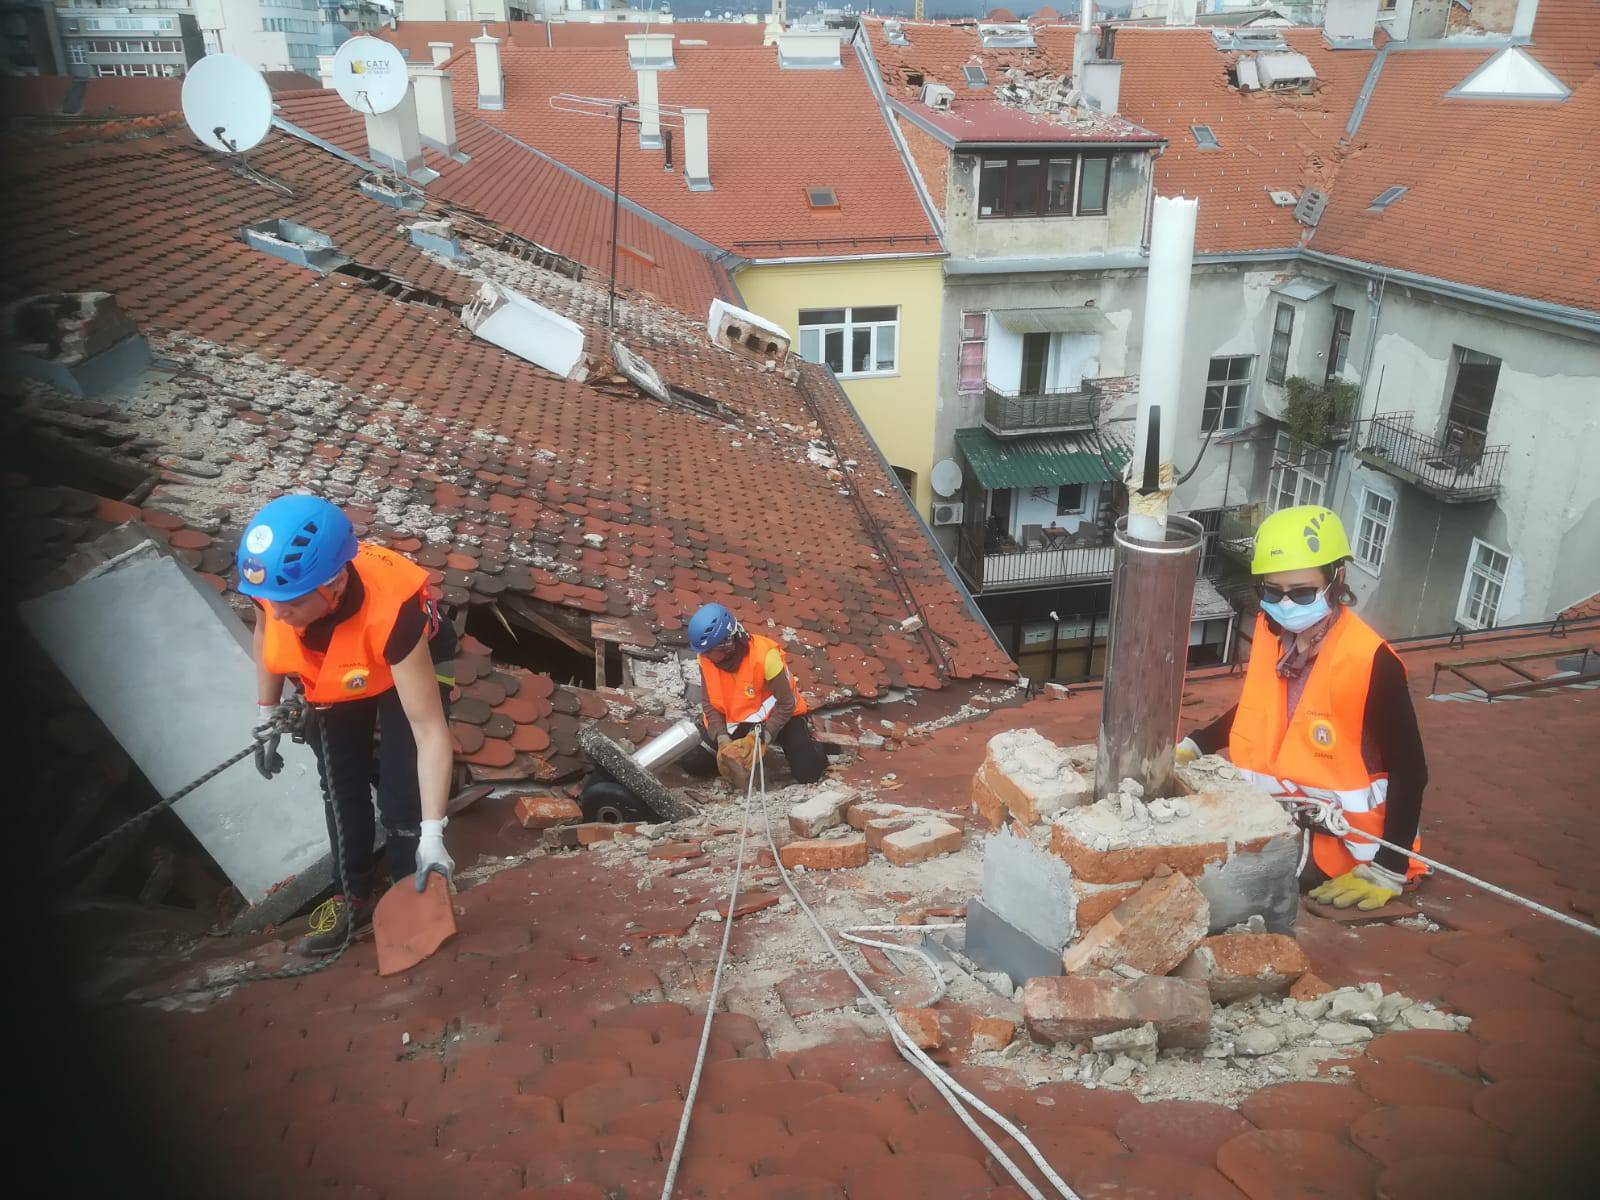 Dame su ušle u gojzerice, stavile kacige i popele se na krovove da pomognu Zagrebu